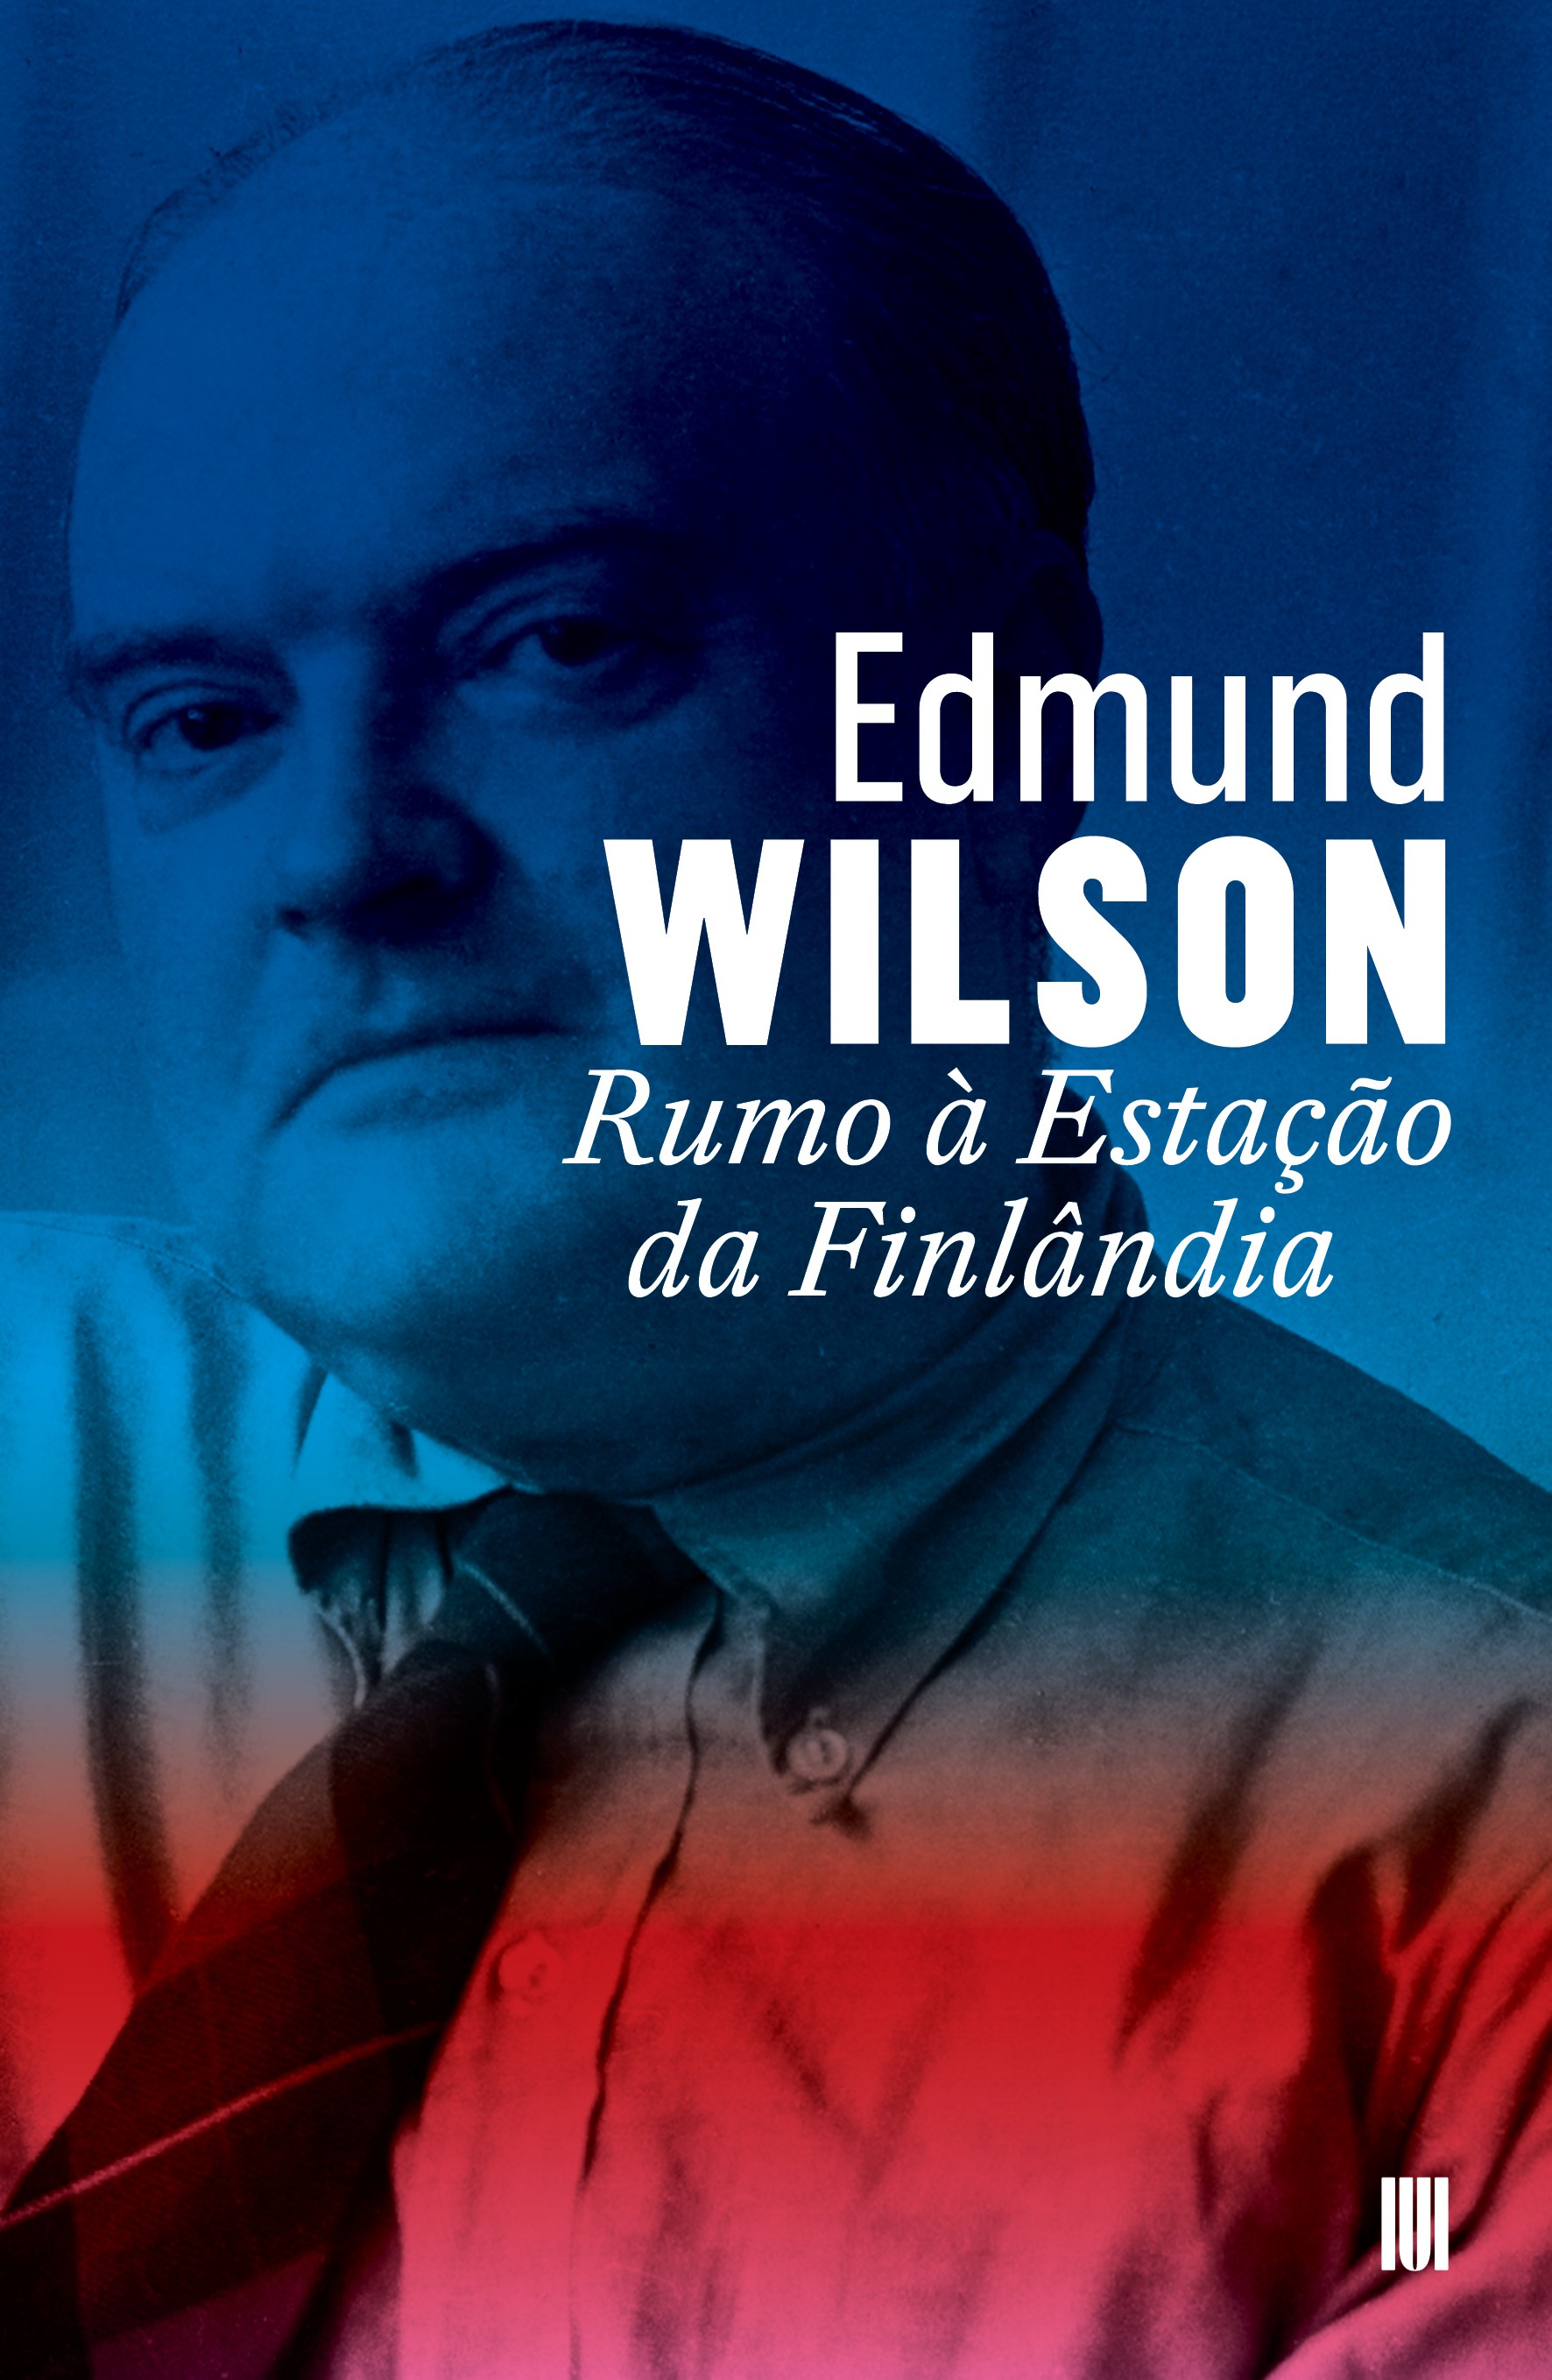 Rumo à Estação da Finlândia de Edmund Wilson